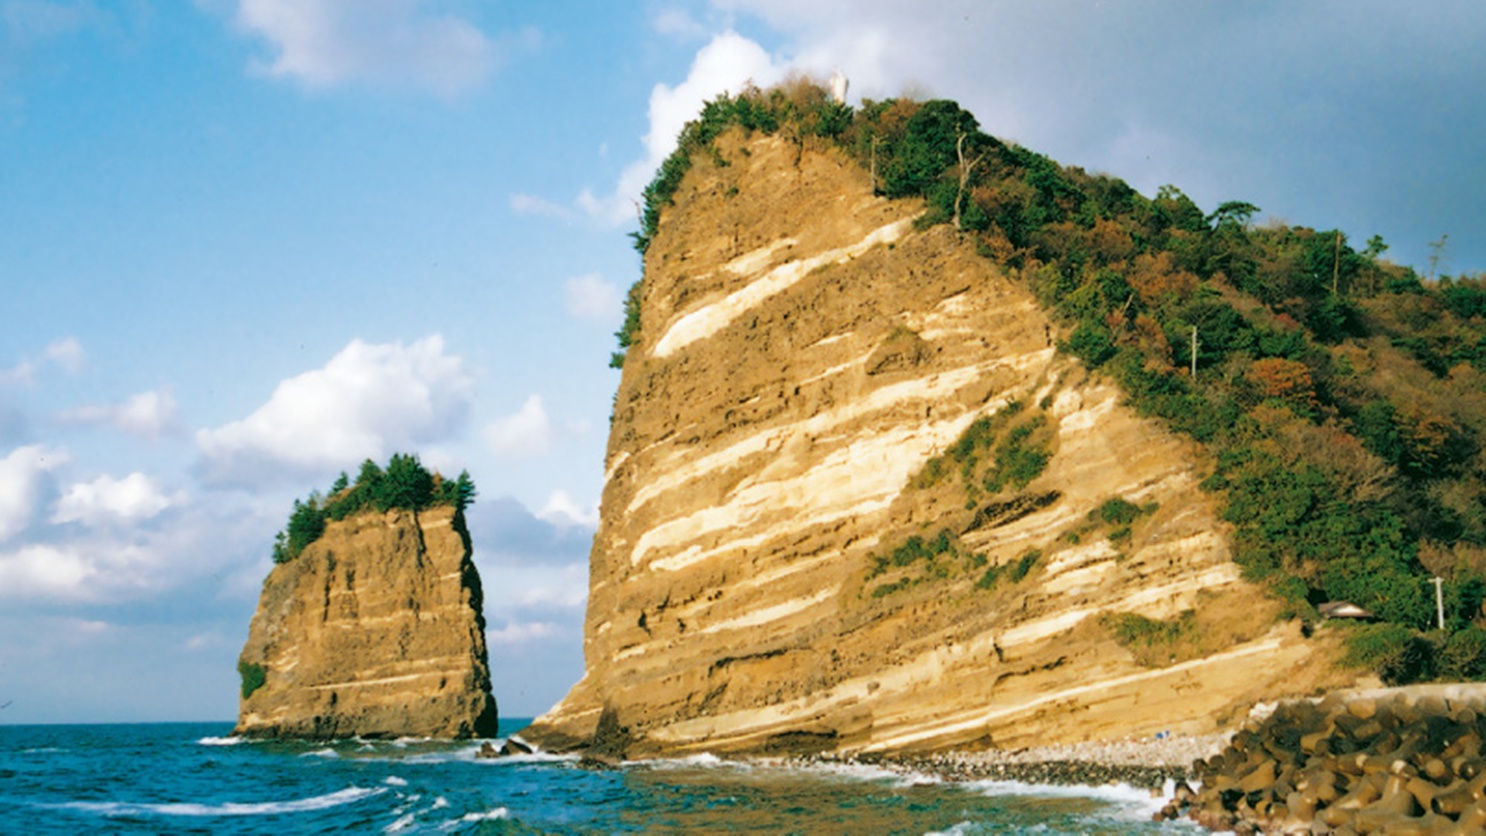 *【太田波根】石見と出雲を結ぶ。日本海に映える美しい「立神島」と「立神岩」は波根町の象徴。